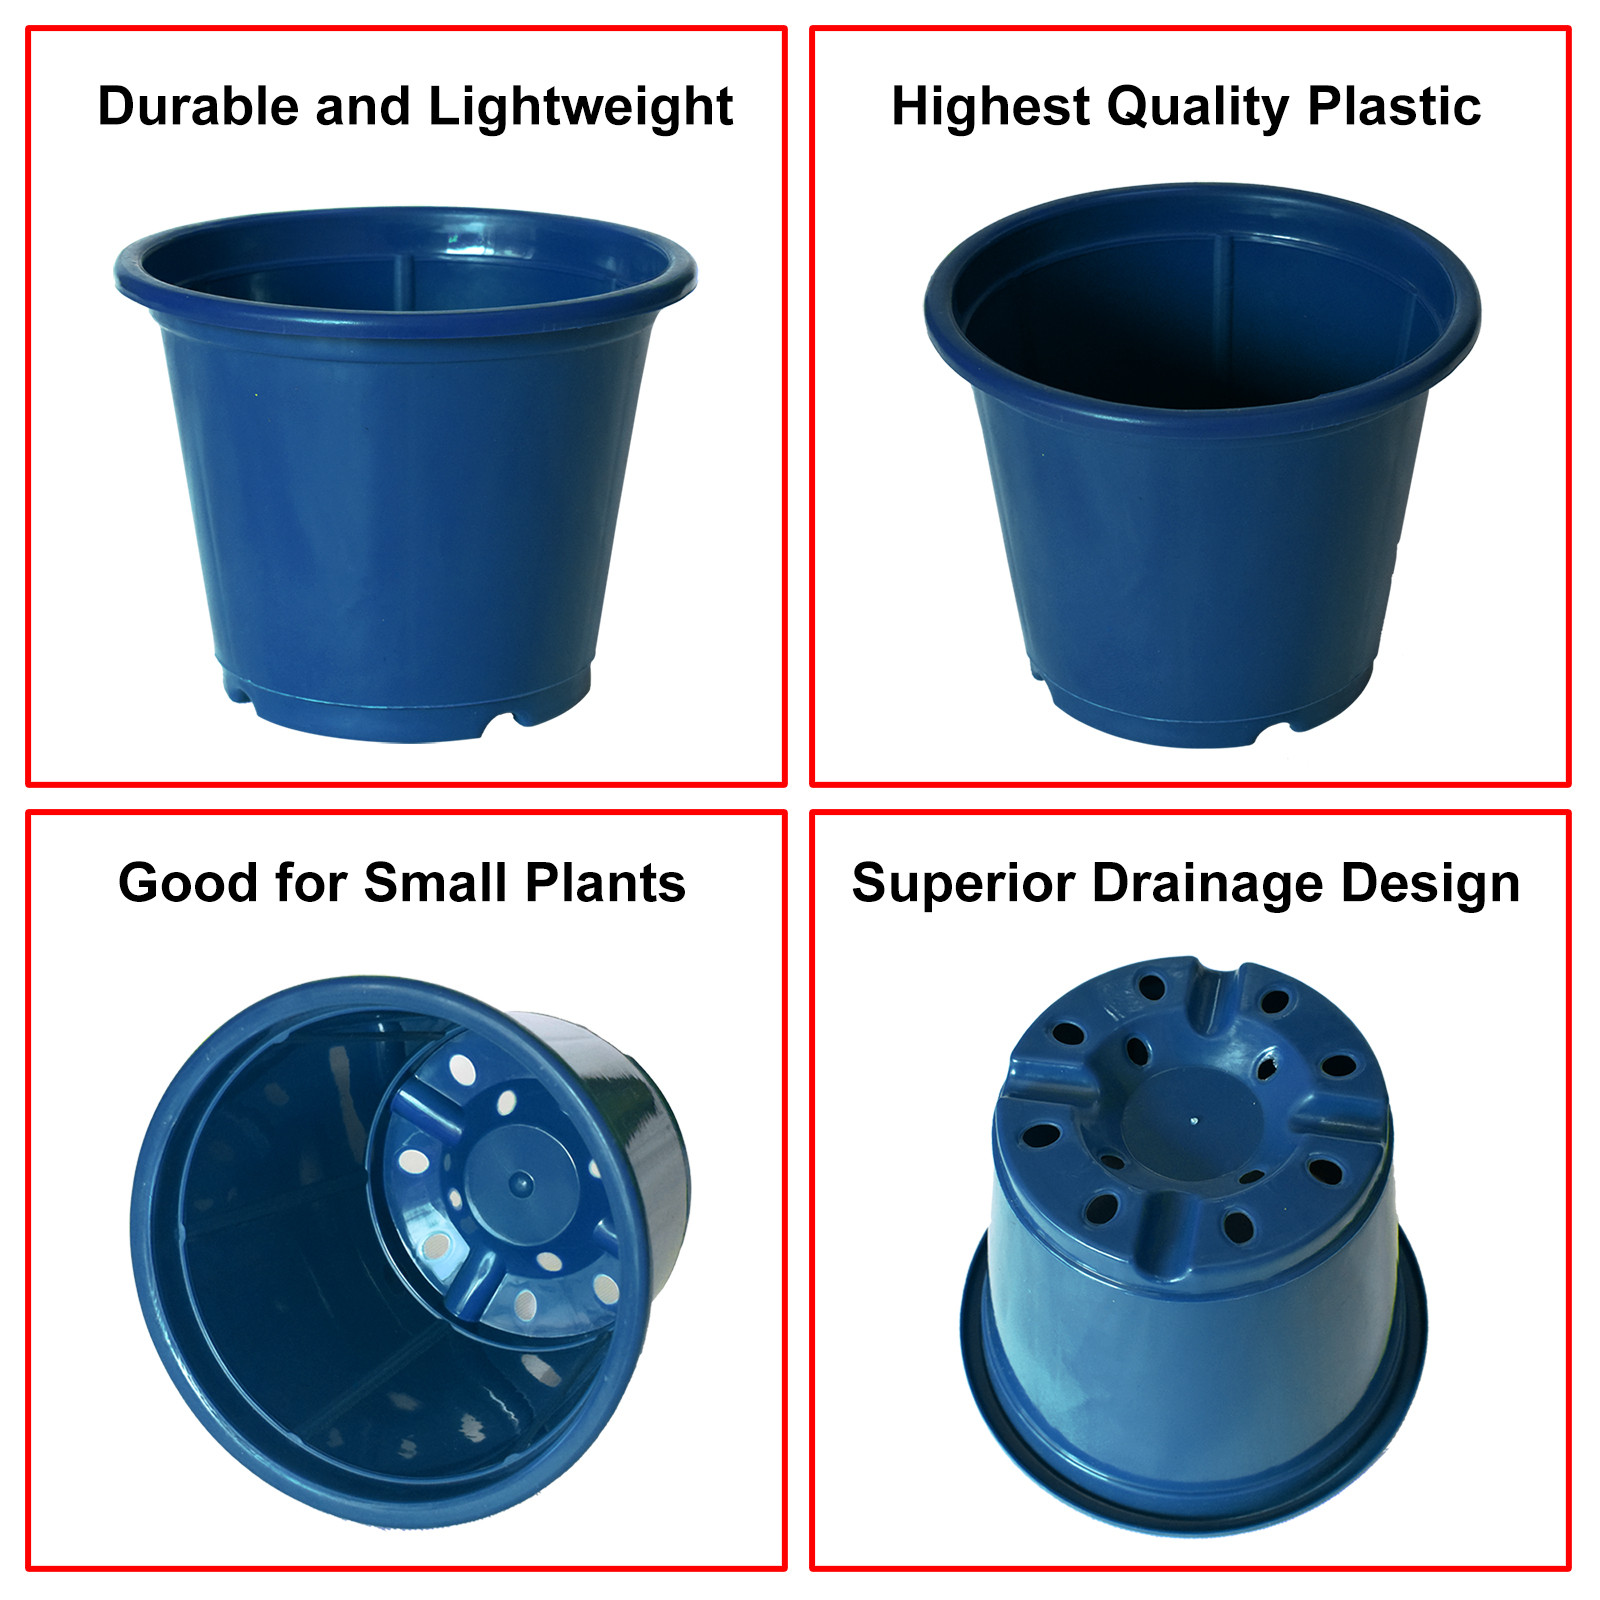 Kuber Industries Durable Plastic Flower Pot|Gamla With Drain Holes for Indoor Home Decor & Outdoor Balcony,Garden,6